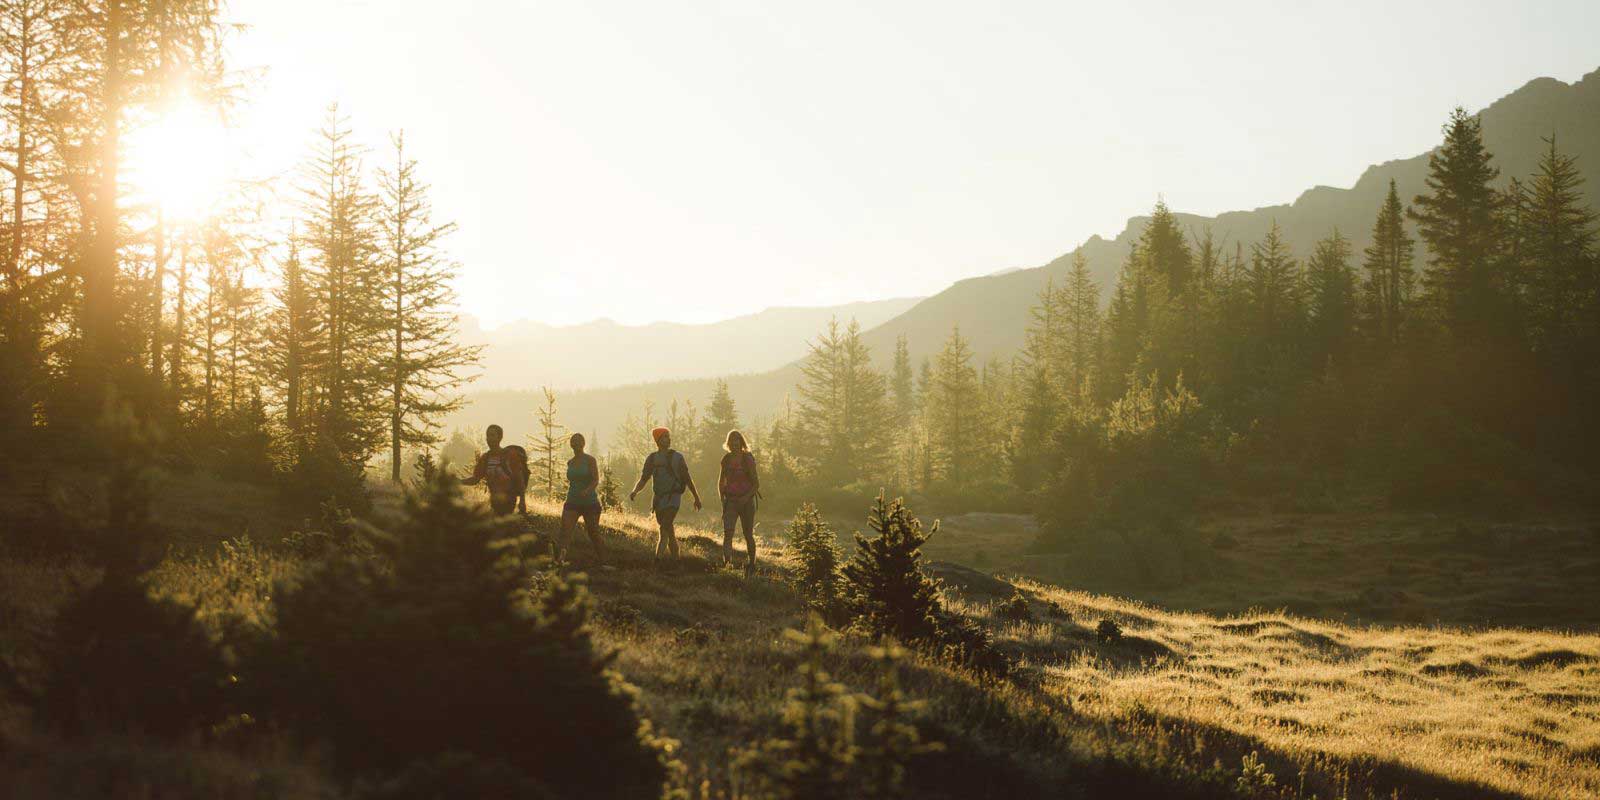 莫纳纳贝尔特附近常绿森林中的一群徒步旅行者